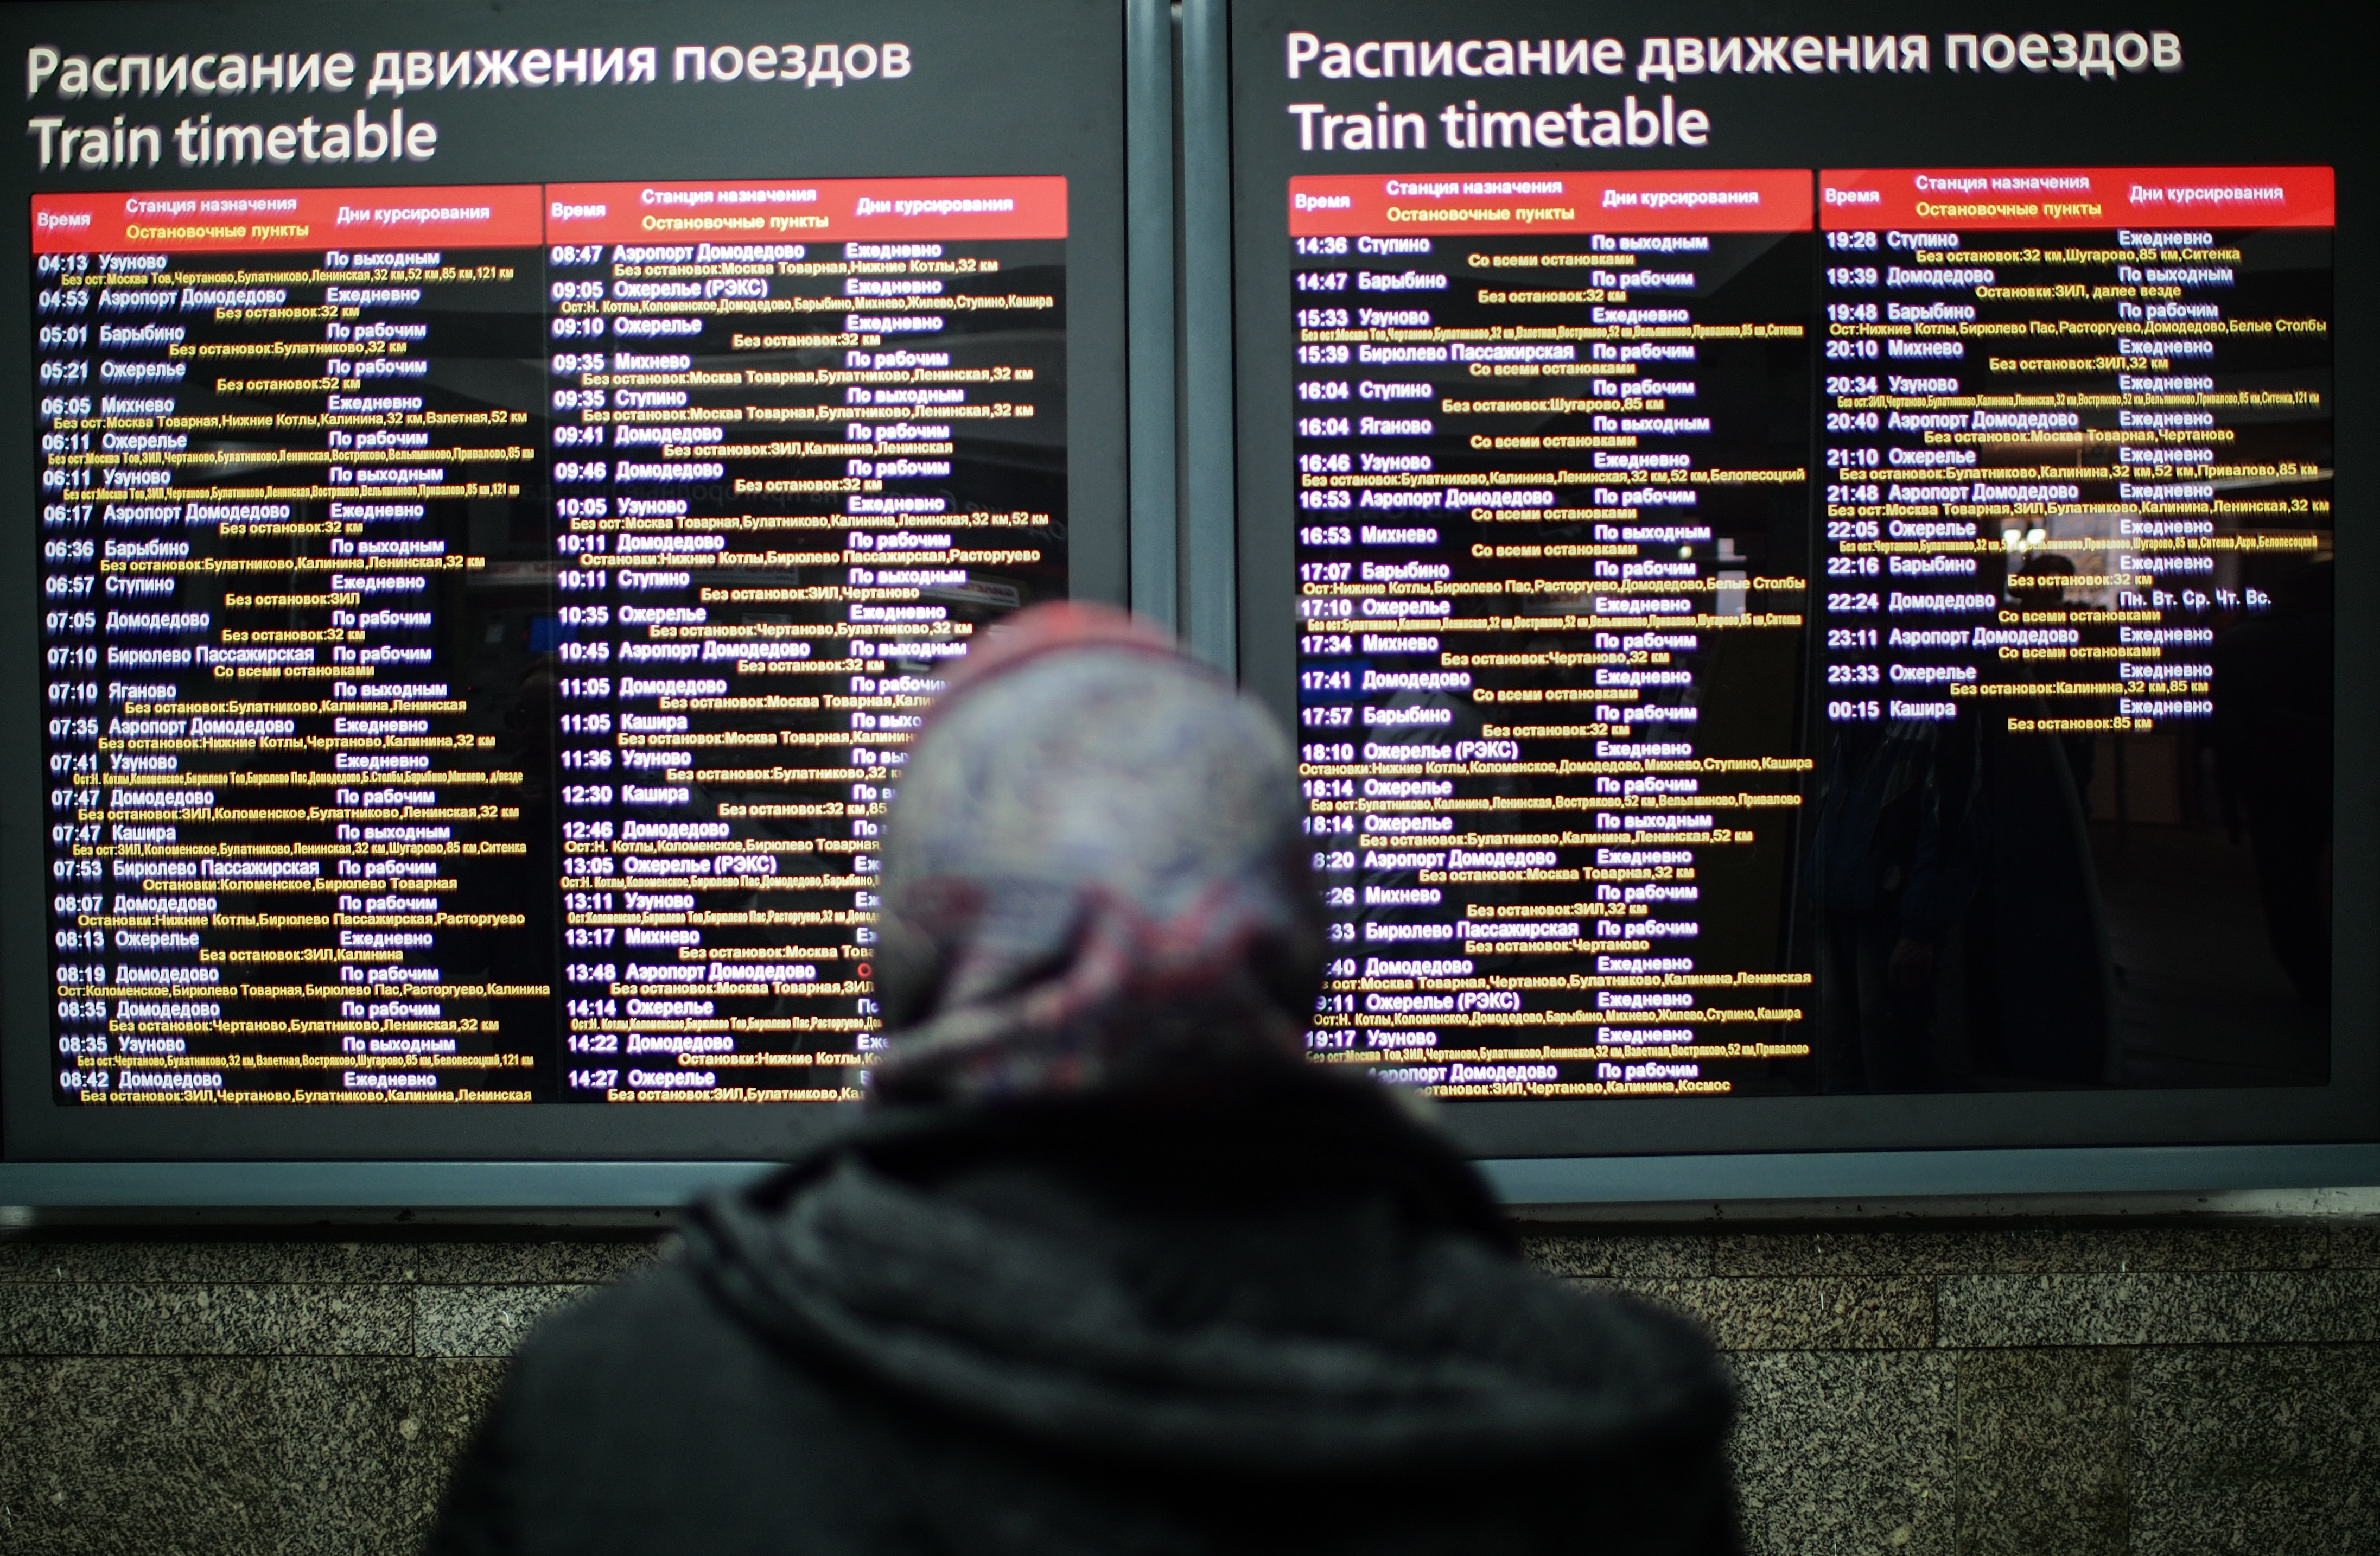 Расписание движения поездов по станции москва. Расписание движения поездов. Расписание поездов. Расписание железнодорожных поездов. Расписание станций поезда.